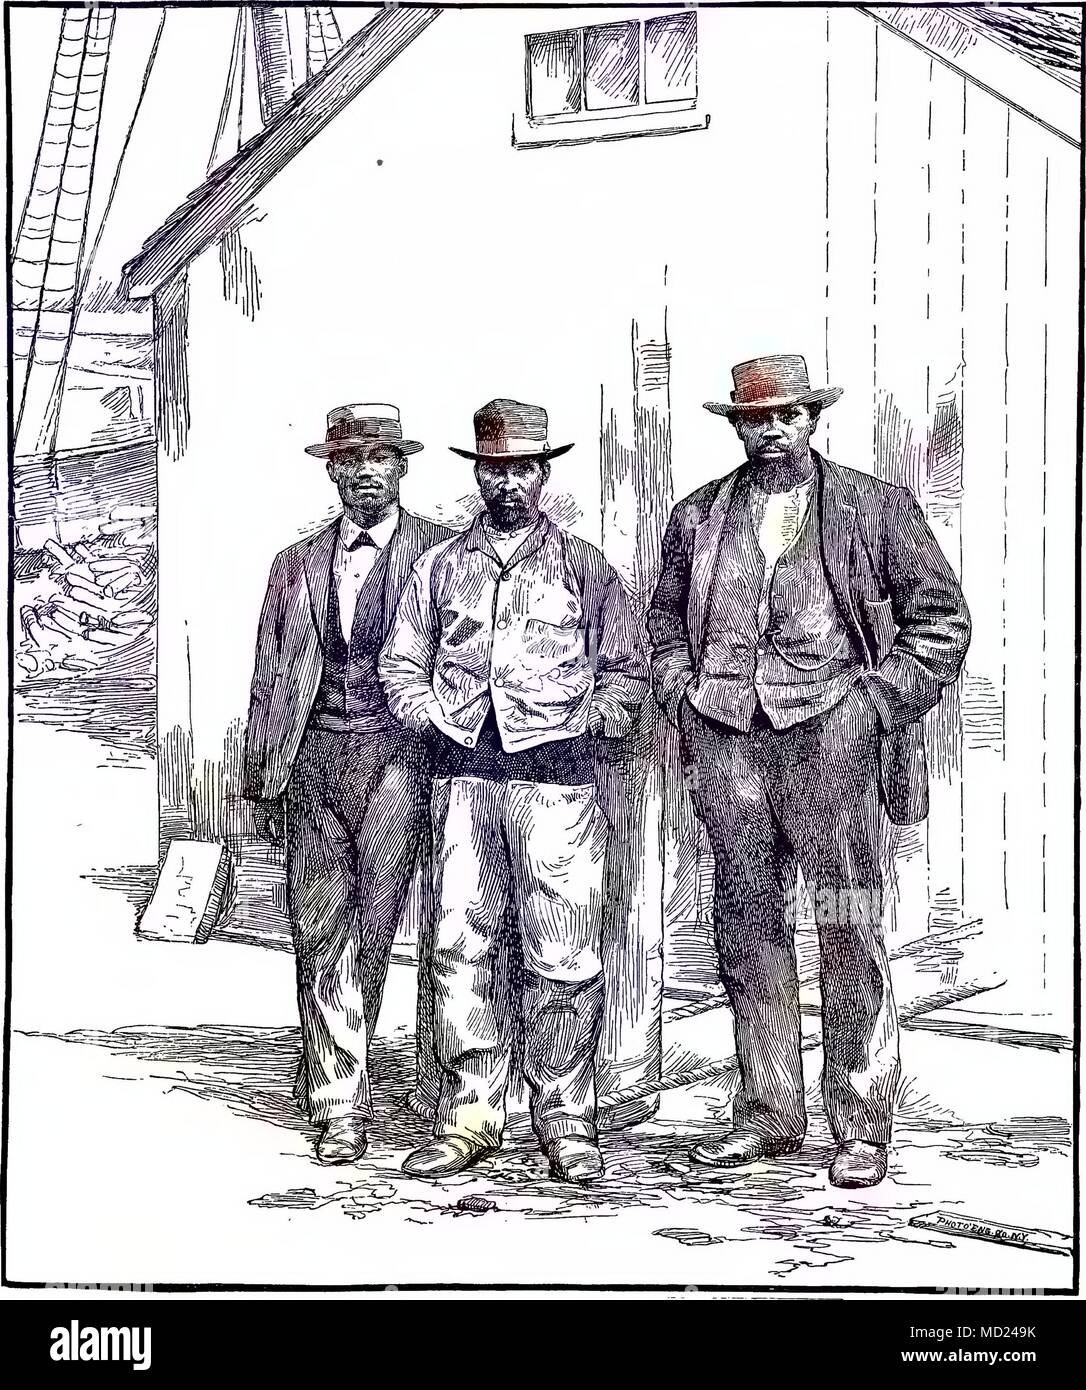 Aguafuerte de tres hombres Caboverdiana de pie en un muelle, New Bedford, Massachusetts, 1880. Cortesía de Internet Archive. Nota: la imagen ha sido coloreada digitalmente mediante un proceso moderno. Los colores pueden no ser exactos del período. () Foto de stock